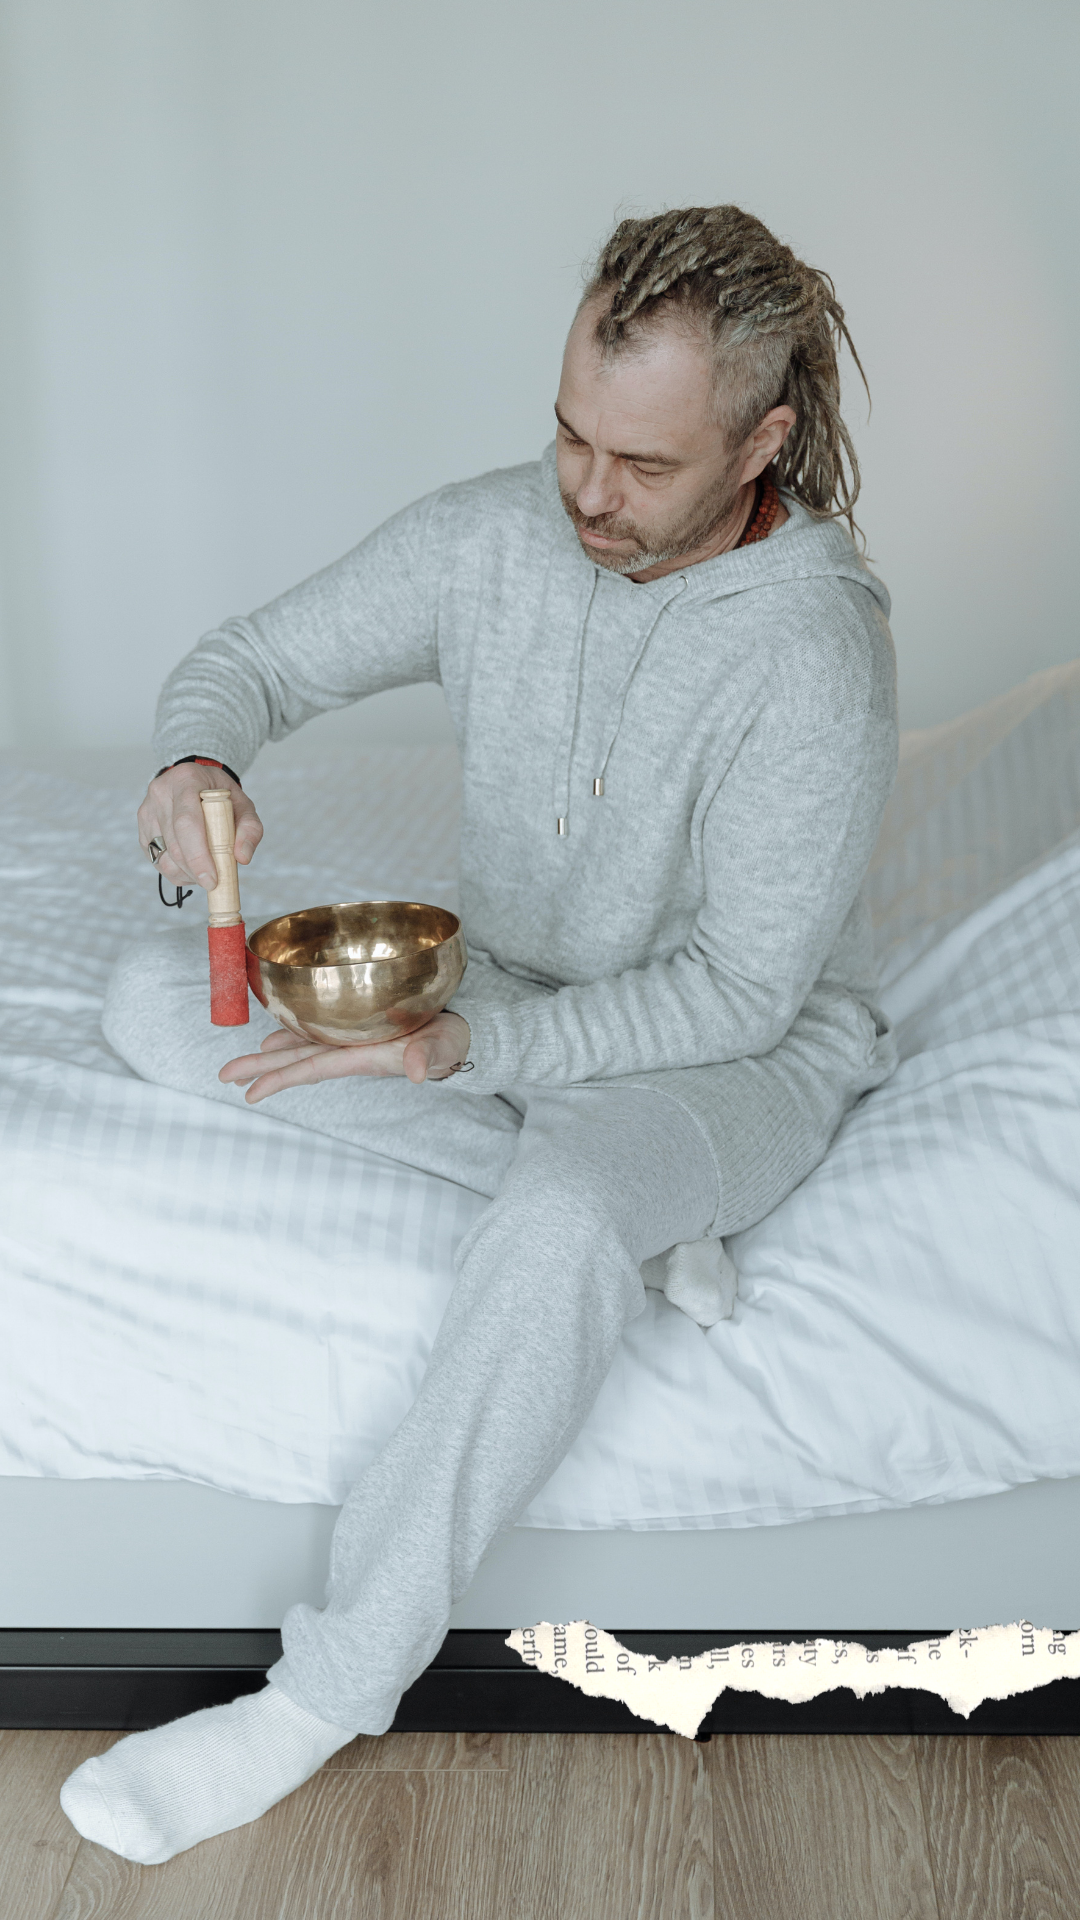 Man in his Pajamas playing singing bowl in bed